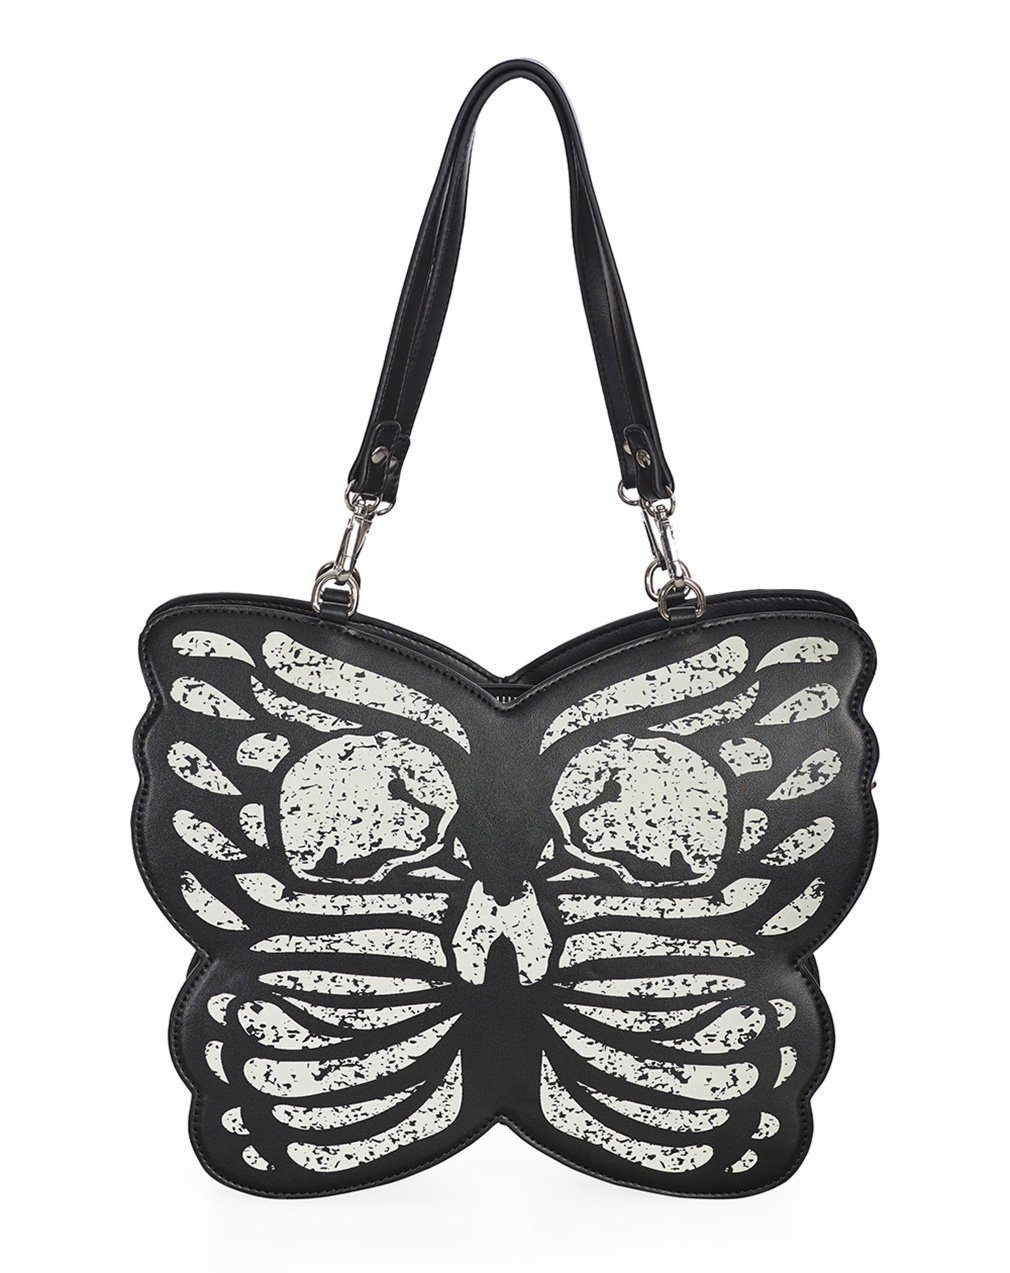 Banned Schultertasche Mariposa Luz, Schmetterling Totenkopf Tasche